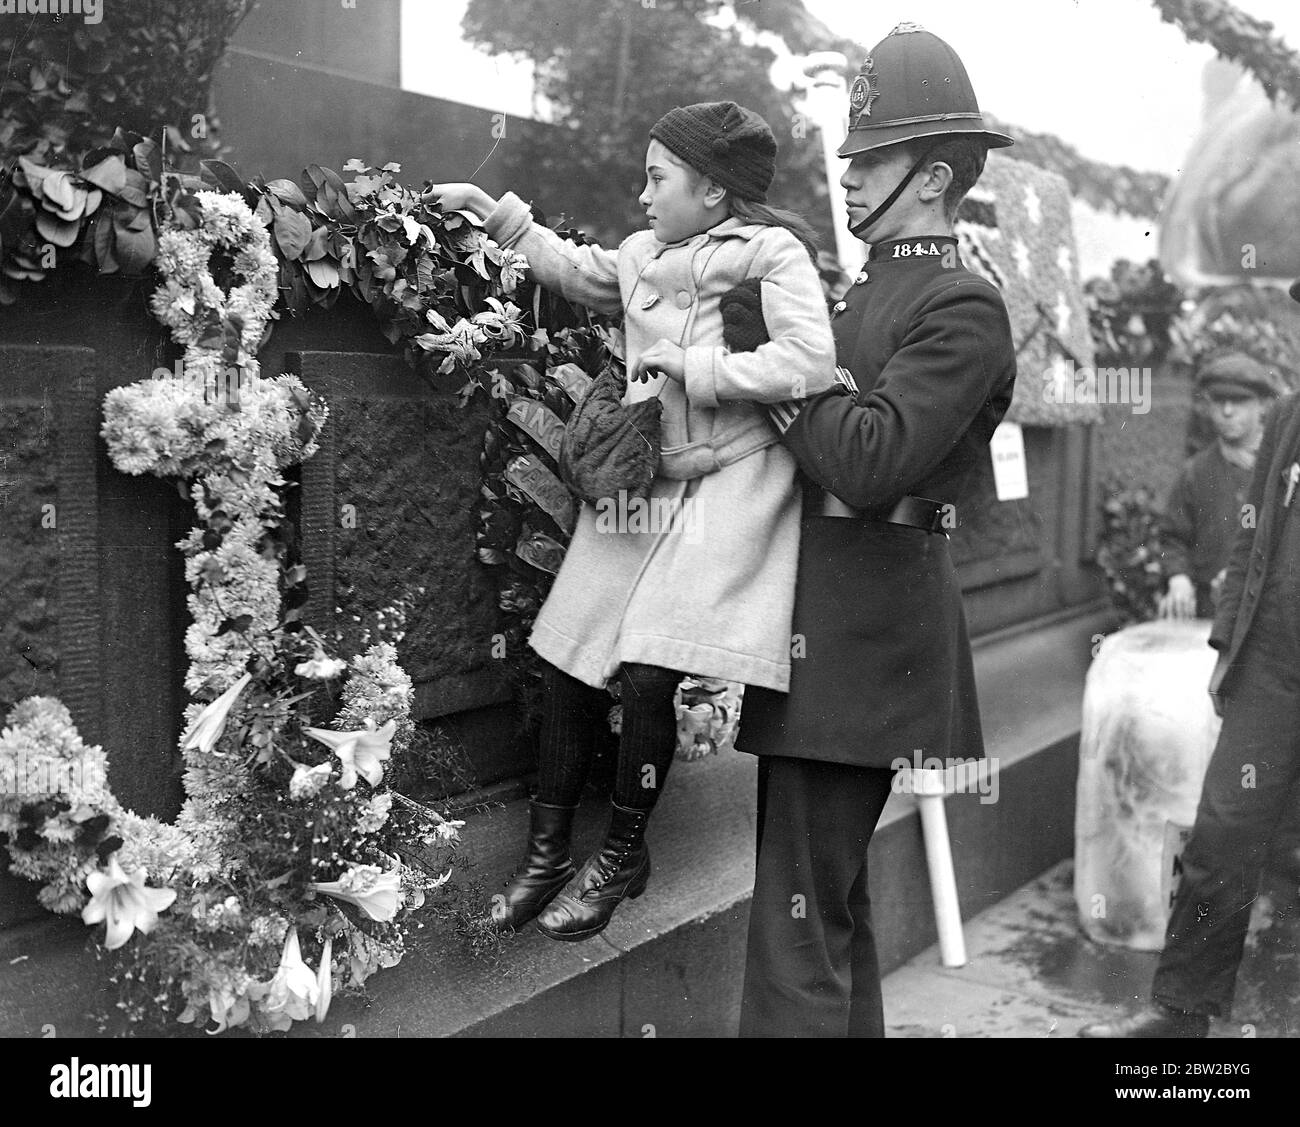 Trafalgar giorno 1916. Un poliziotto gentilmente solleva una bambina che può depositare una corona in memoria di un parente vicino perso in un sottomarino. 21 ottobre 1916 Foto Stock